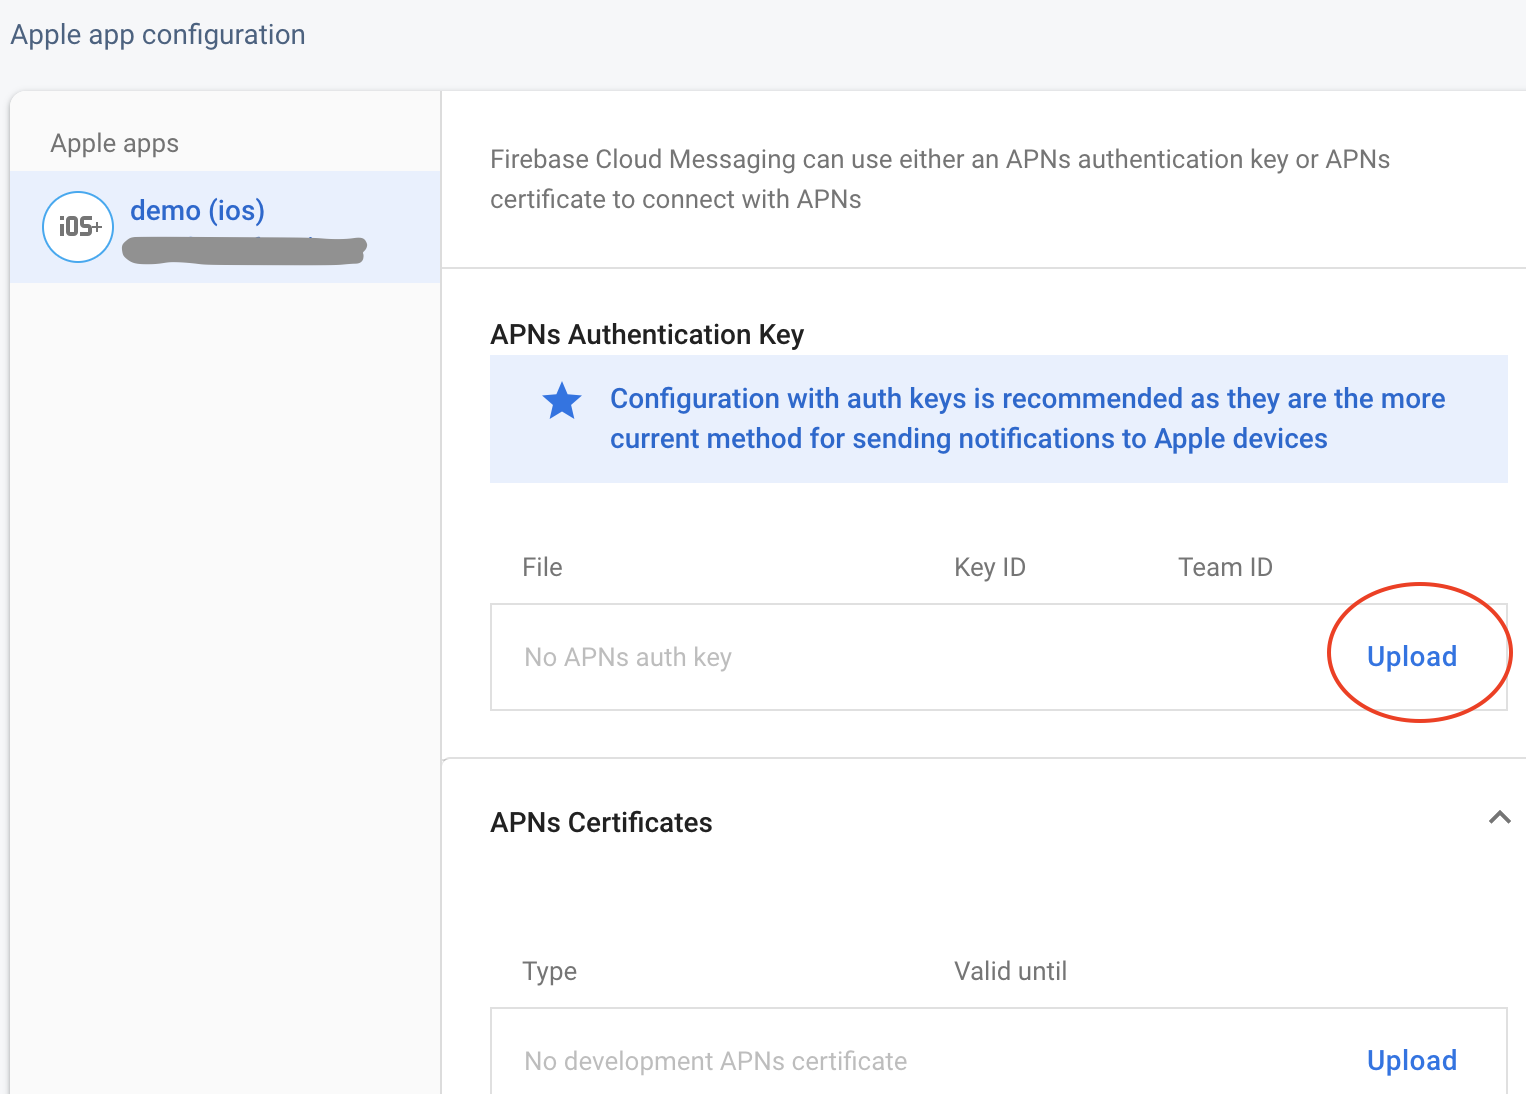 एपीएन प्रमाणीकरण कुंजी अपलोड करने के लिए बटनों को हाइलाइट करने वाले फायरबेस कंसोल पृष्ठ का एक छोटा स्क्रीनशॉट